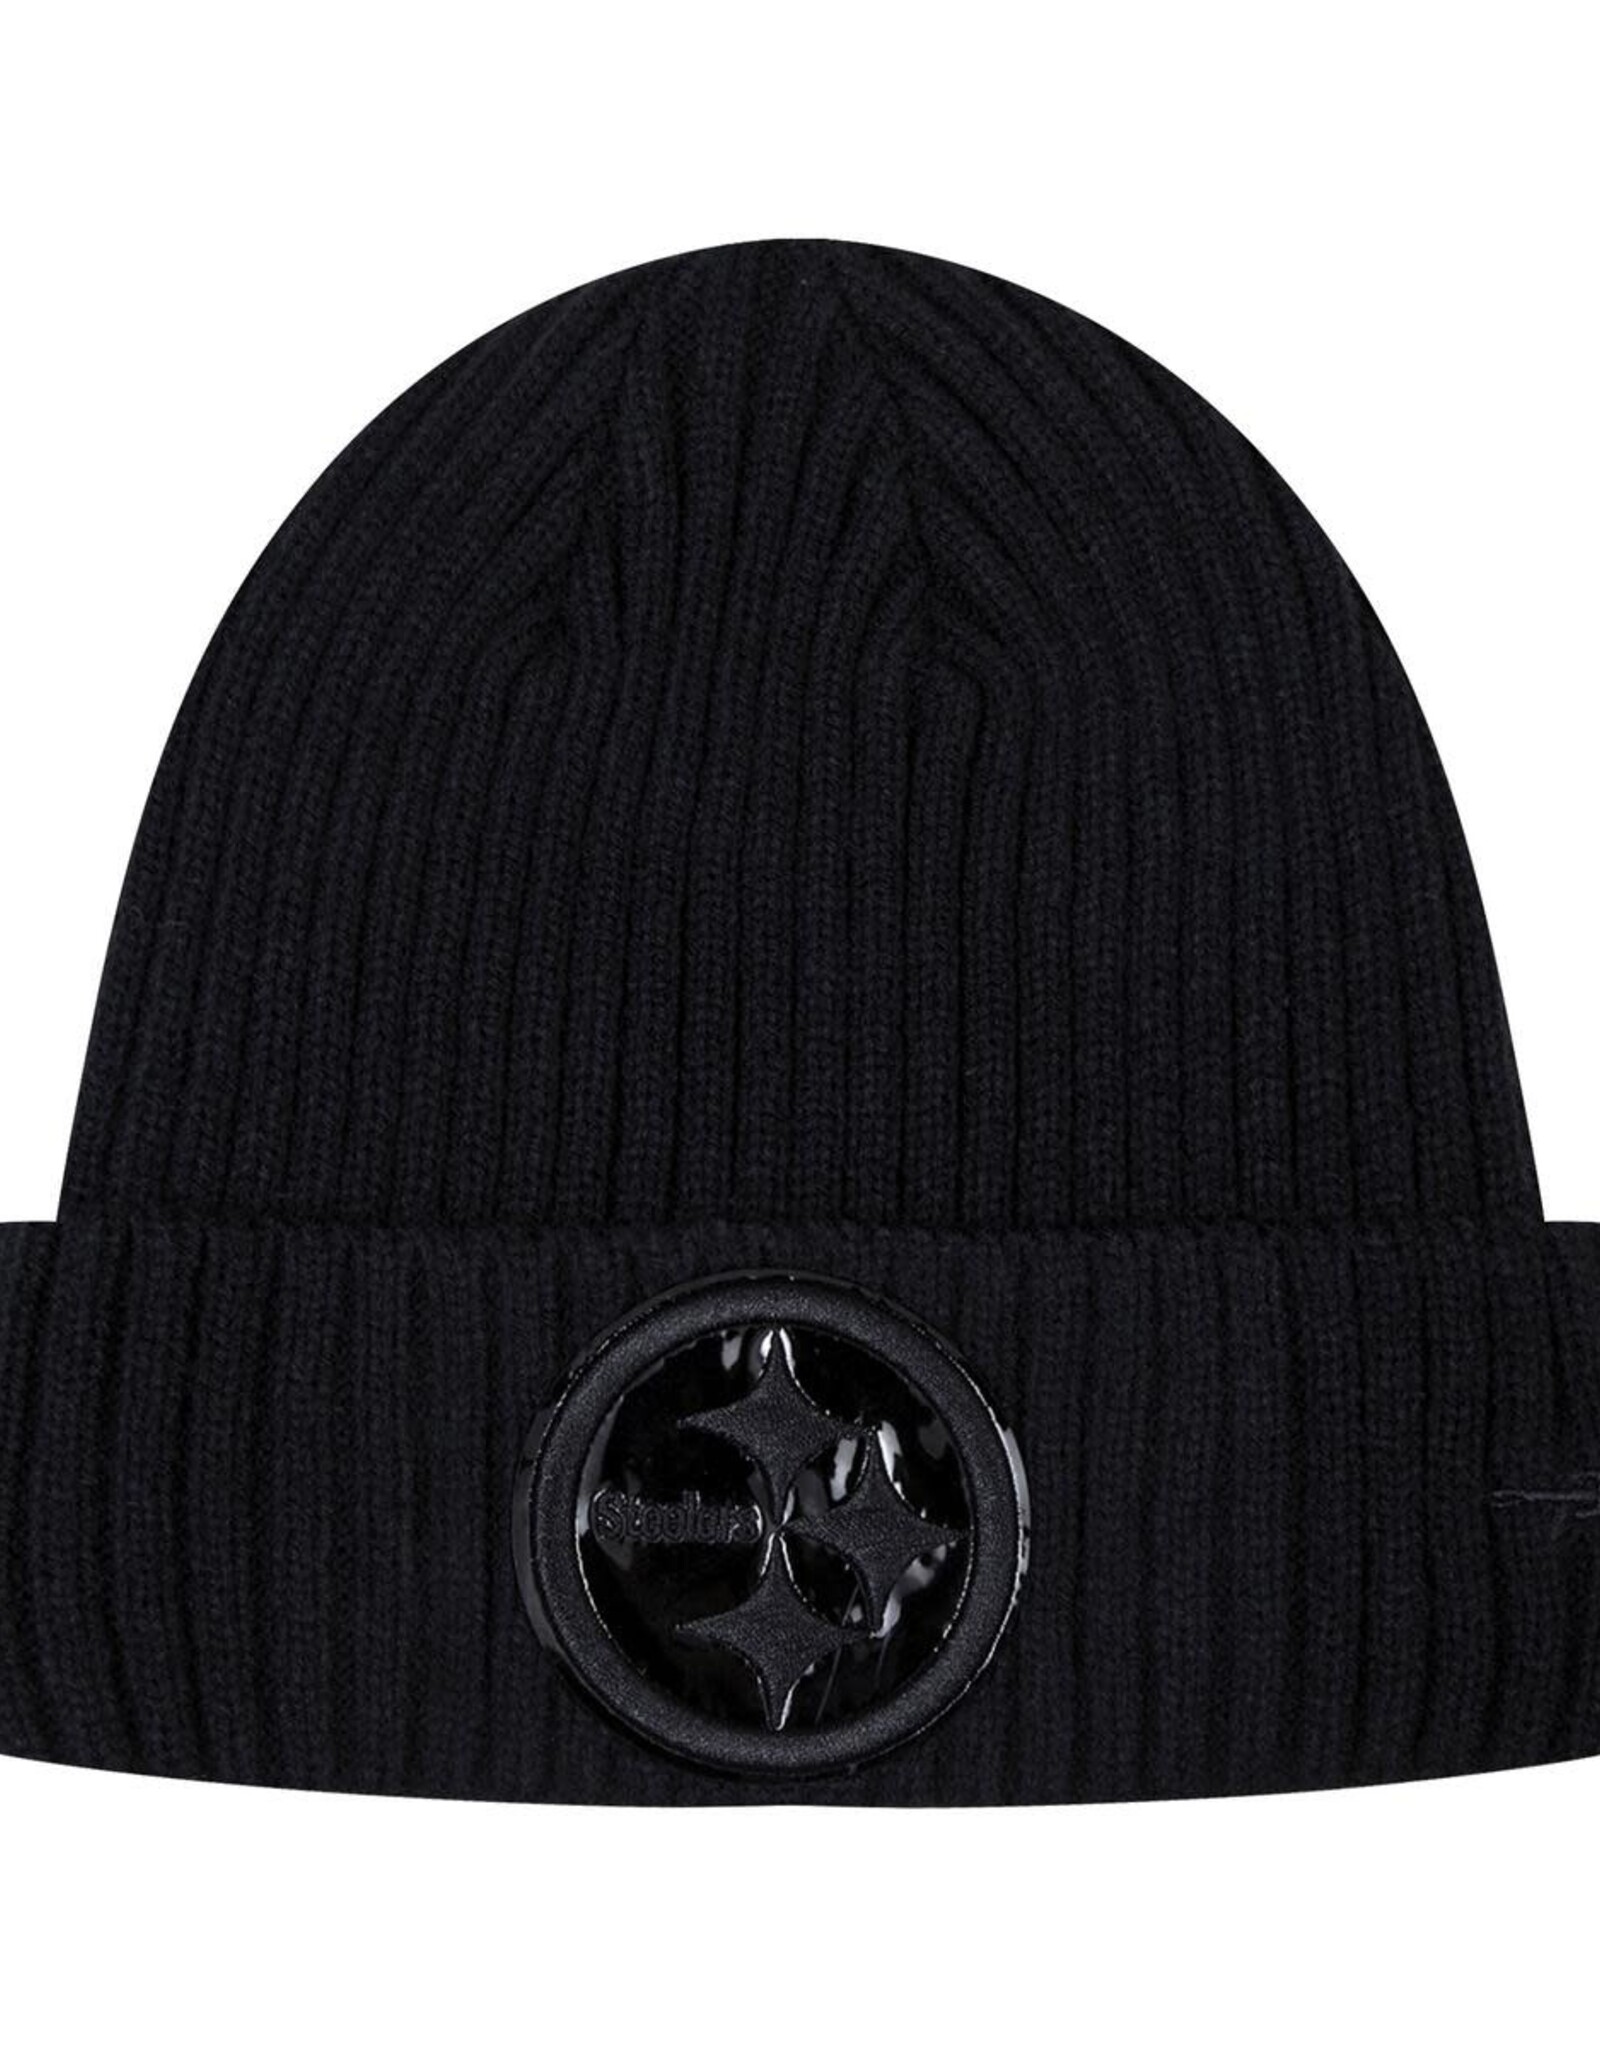 Pro Standard Pittsburgh Steelers Triple Black Knit Hat